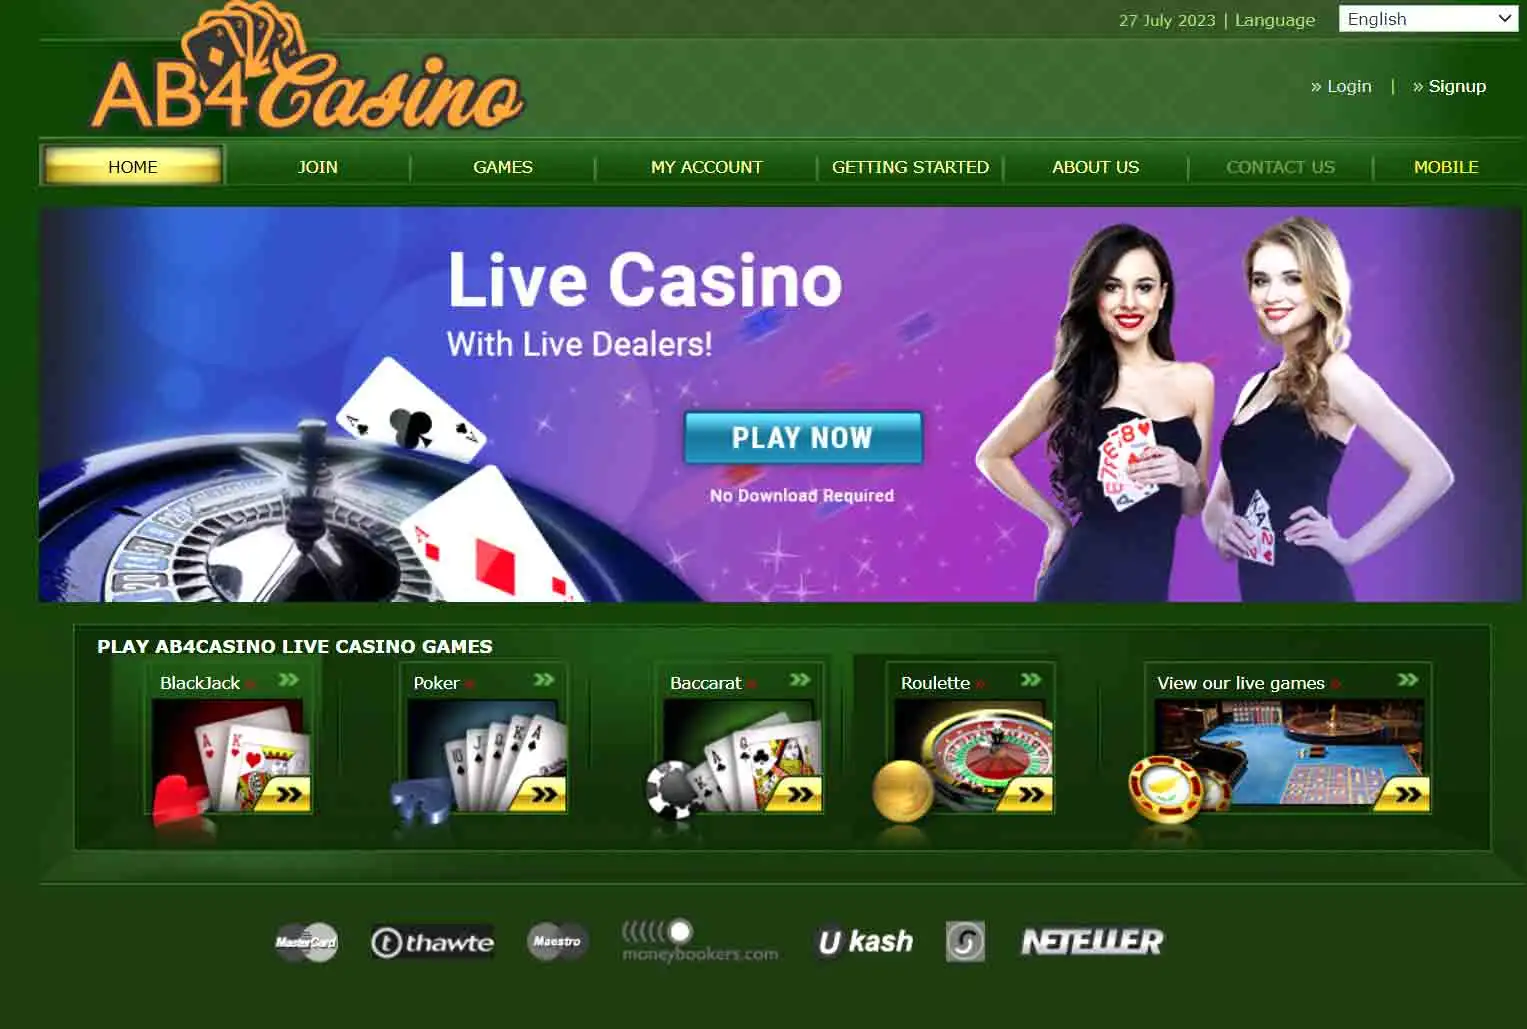 AB4 Casino